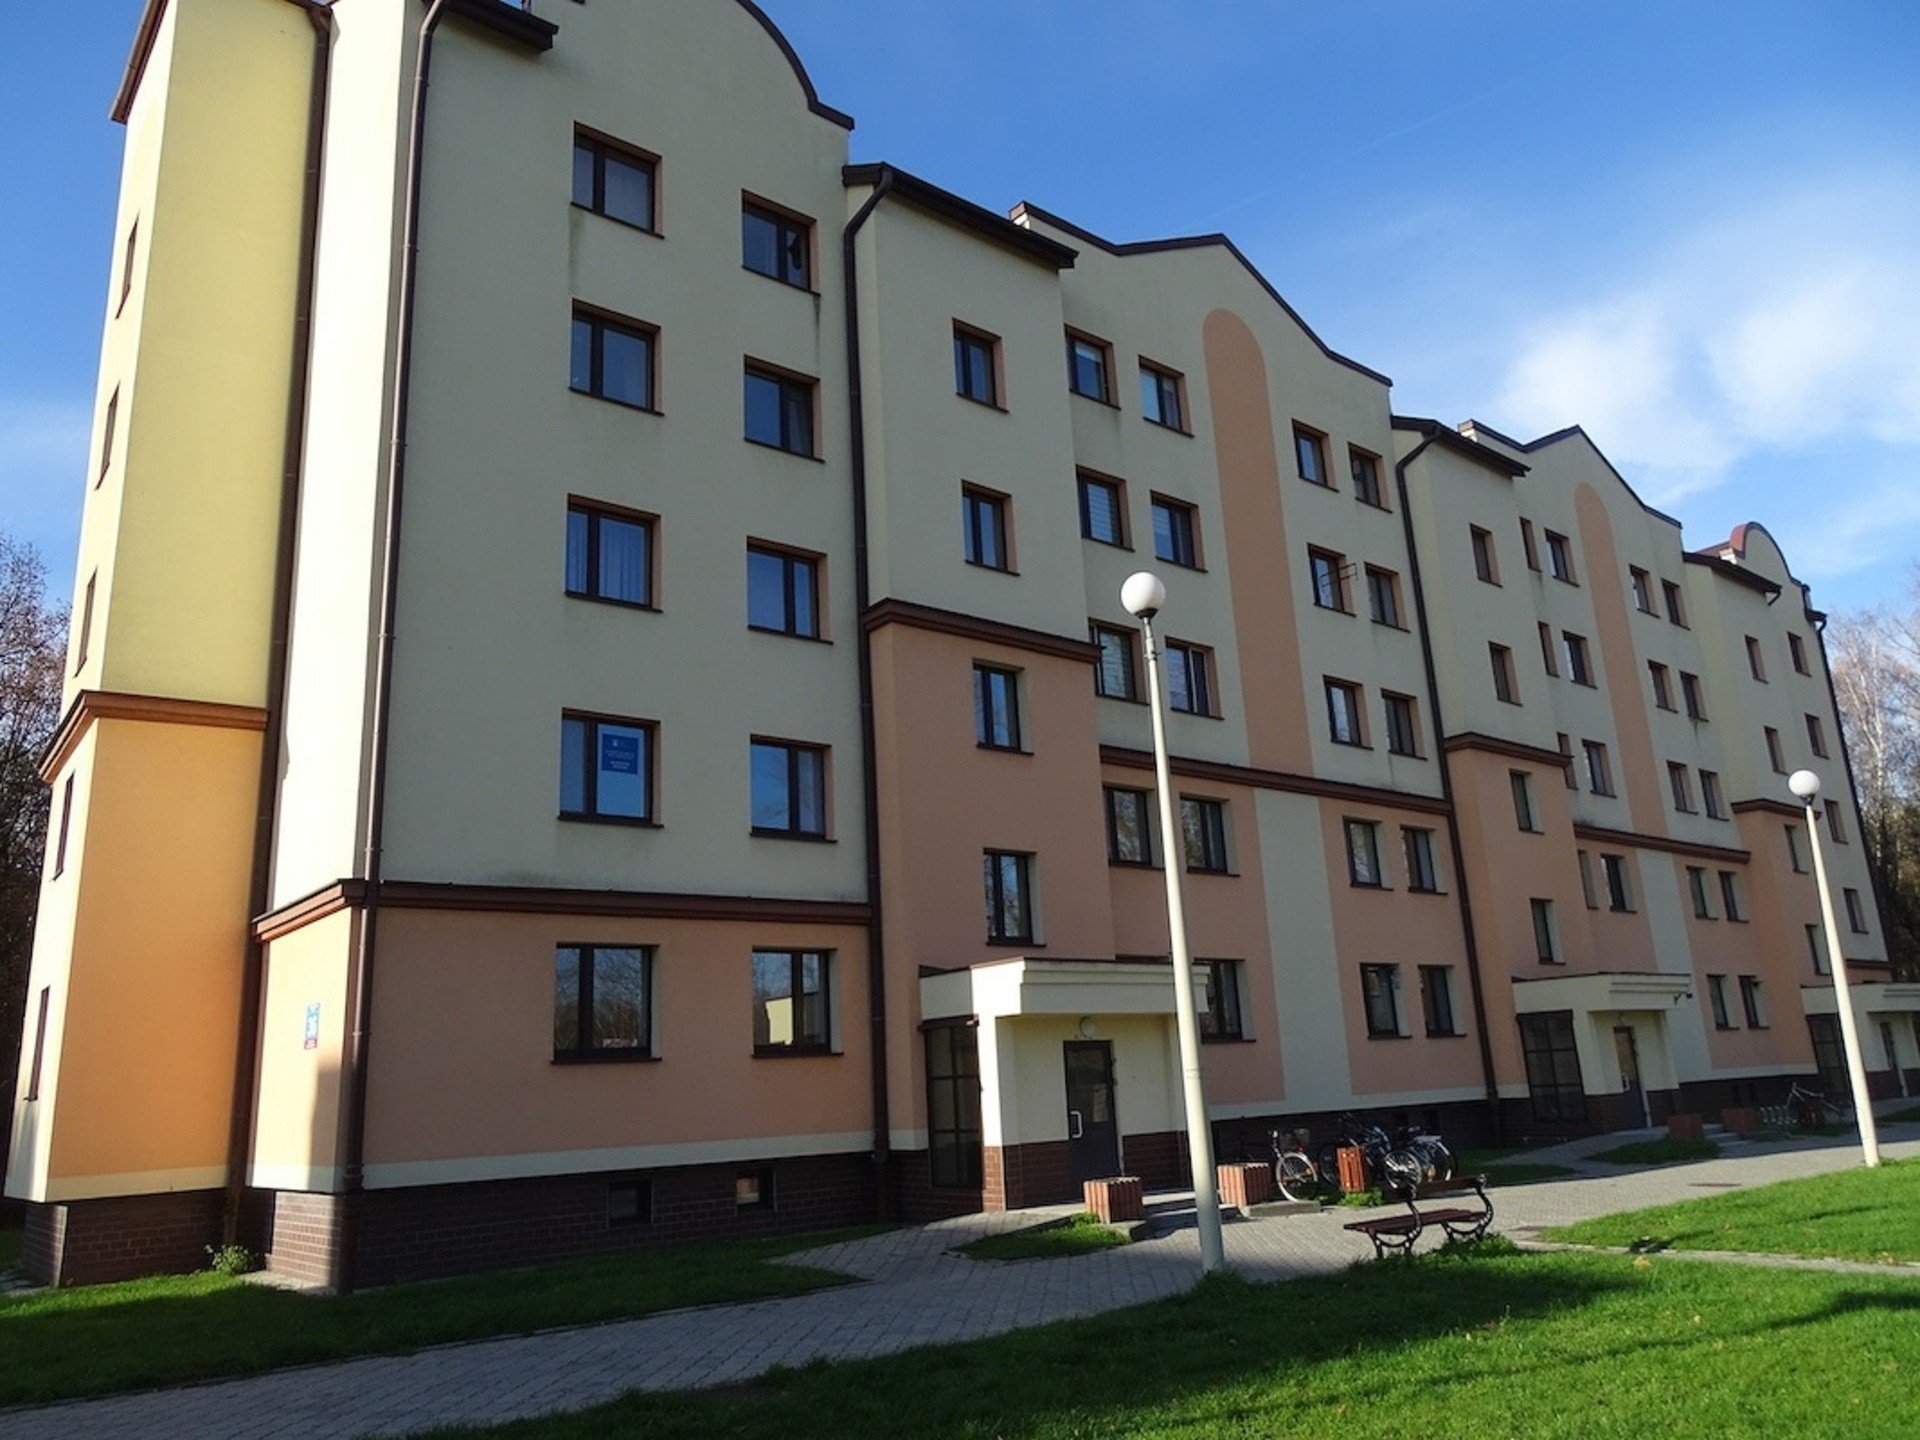 Wojsko organizuje pierwszy w tym roku przetarg na tanie mieszkania w Leźnicy  Wielkiej (zobacz zdjęcia mieszkań) | Dziennik Łódzki